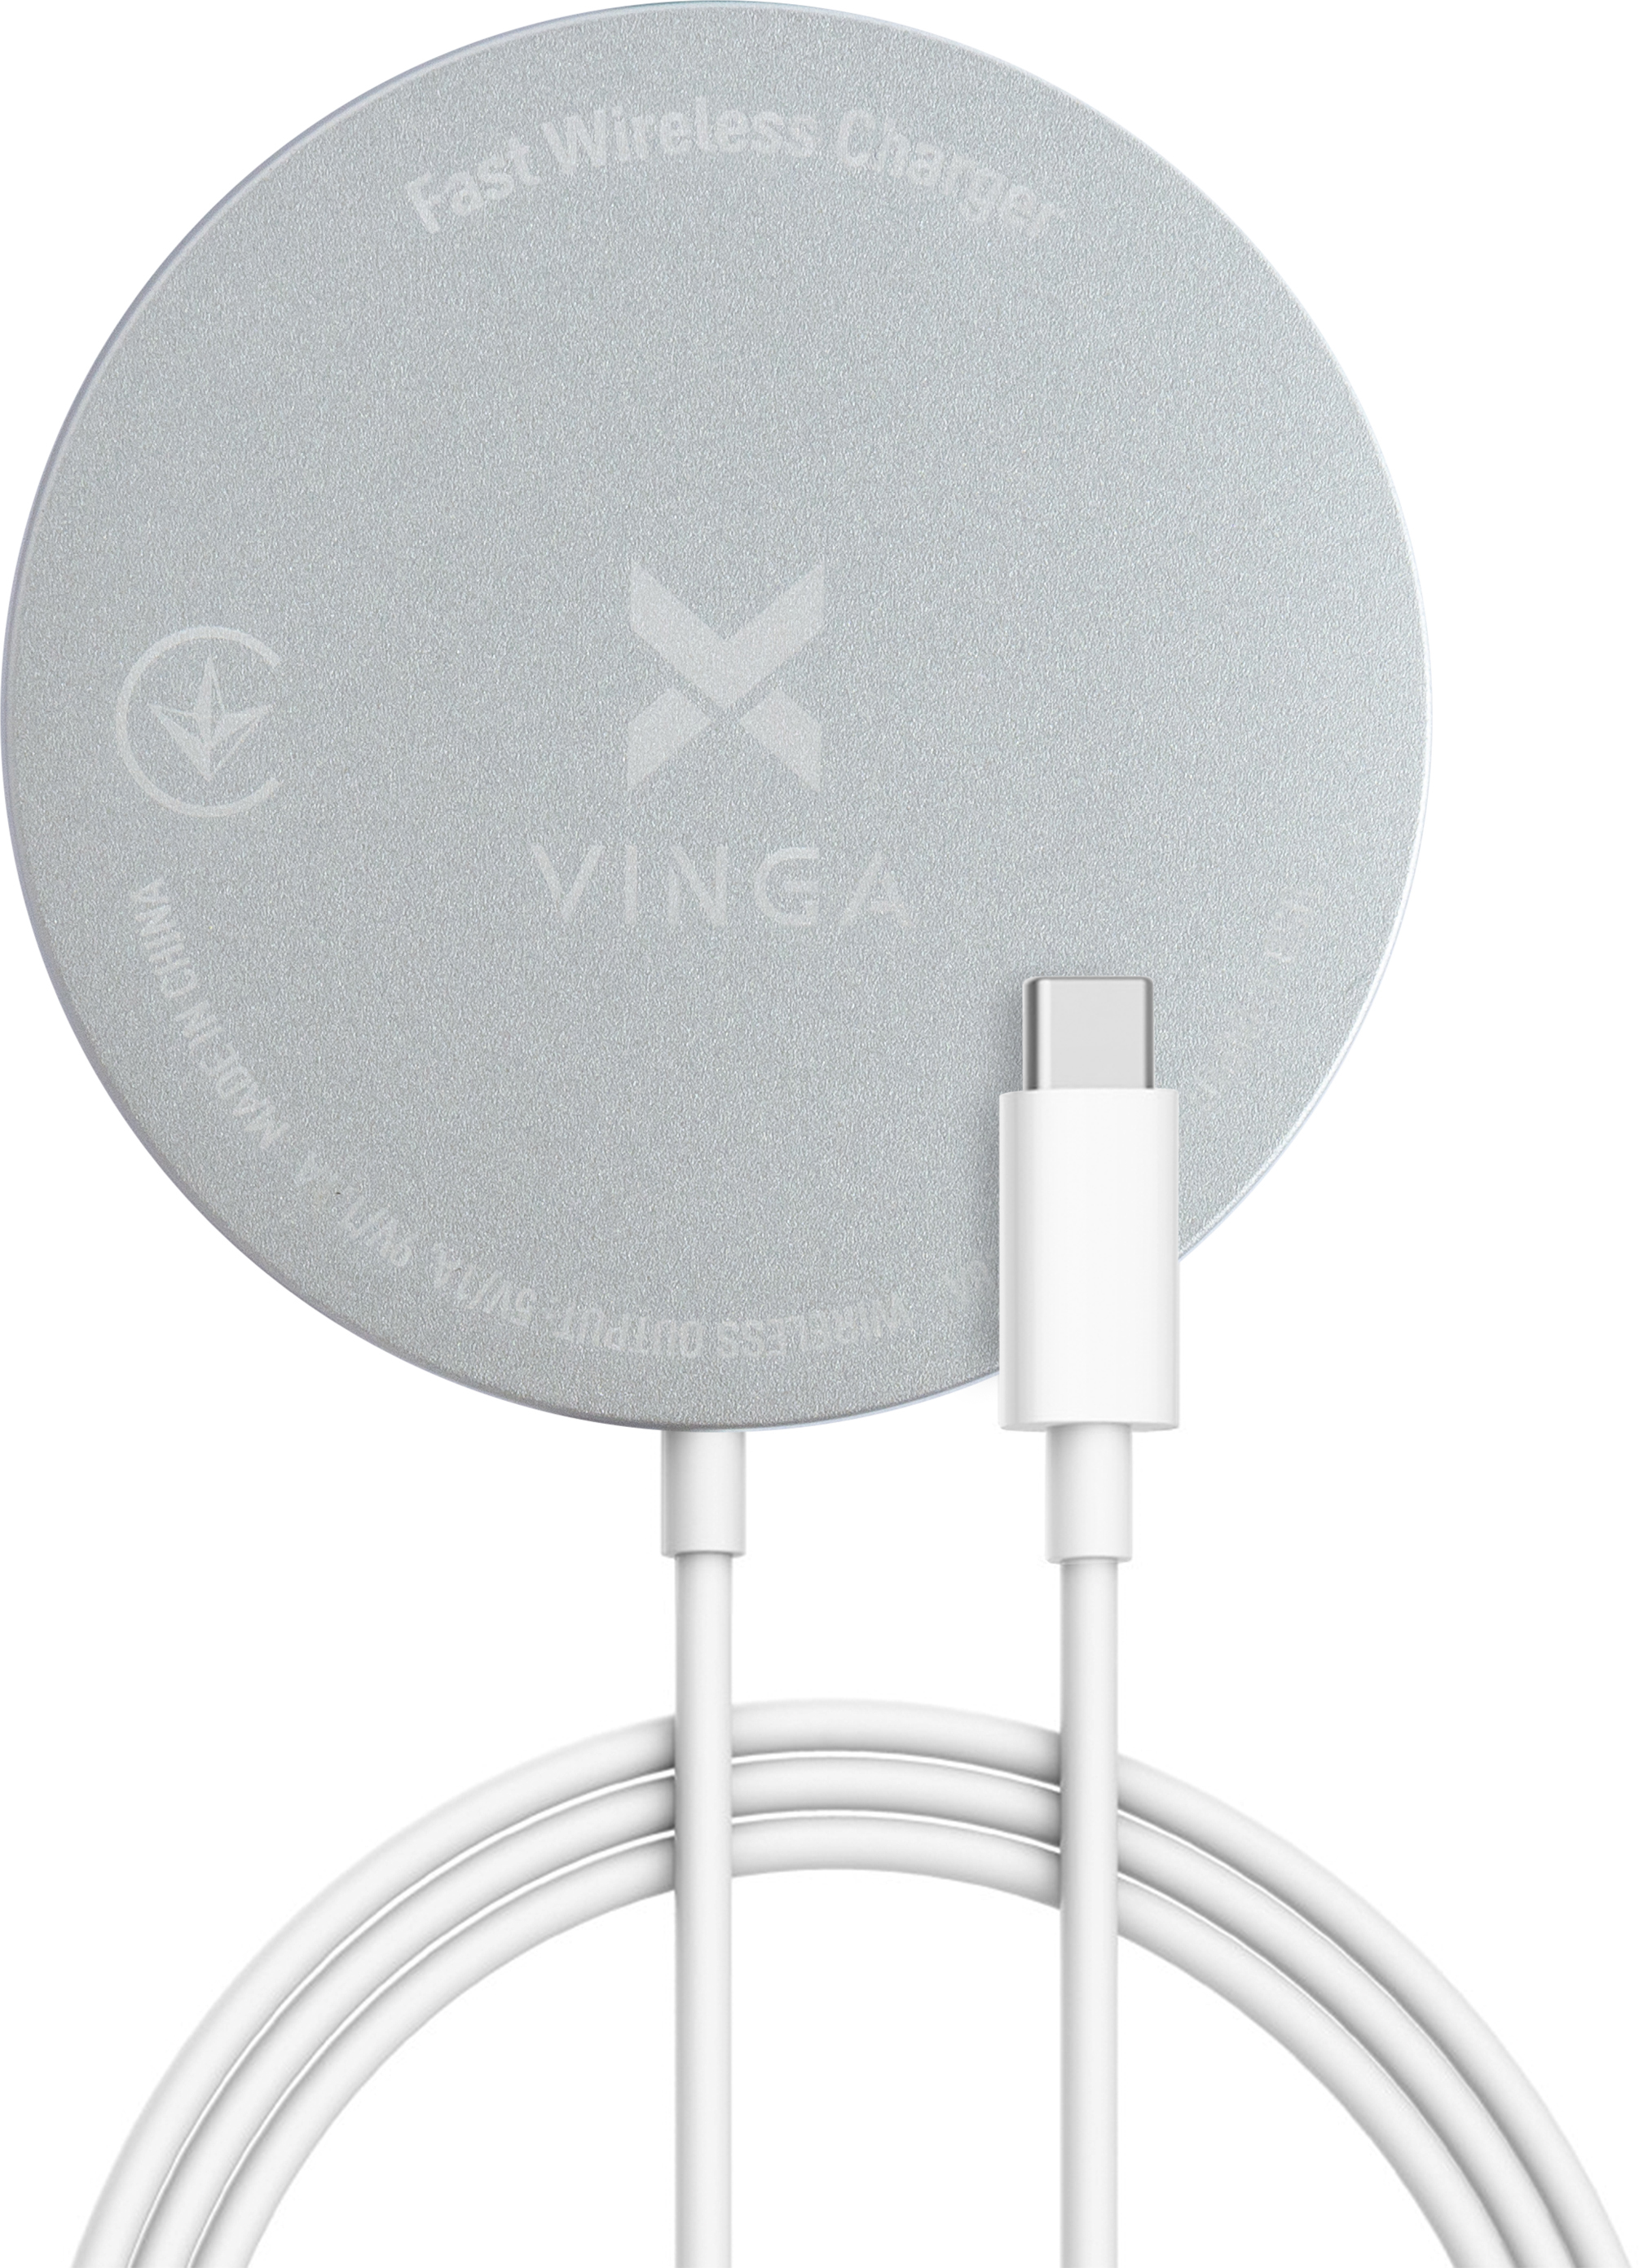 Зарядное устройство Vinga Magnetic Wireless Charger 10W (VCHAMS) в интернет-магазине, главное фото